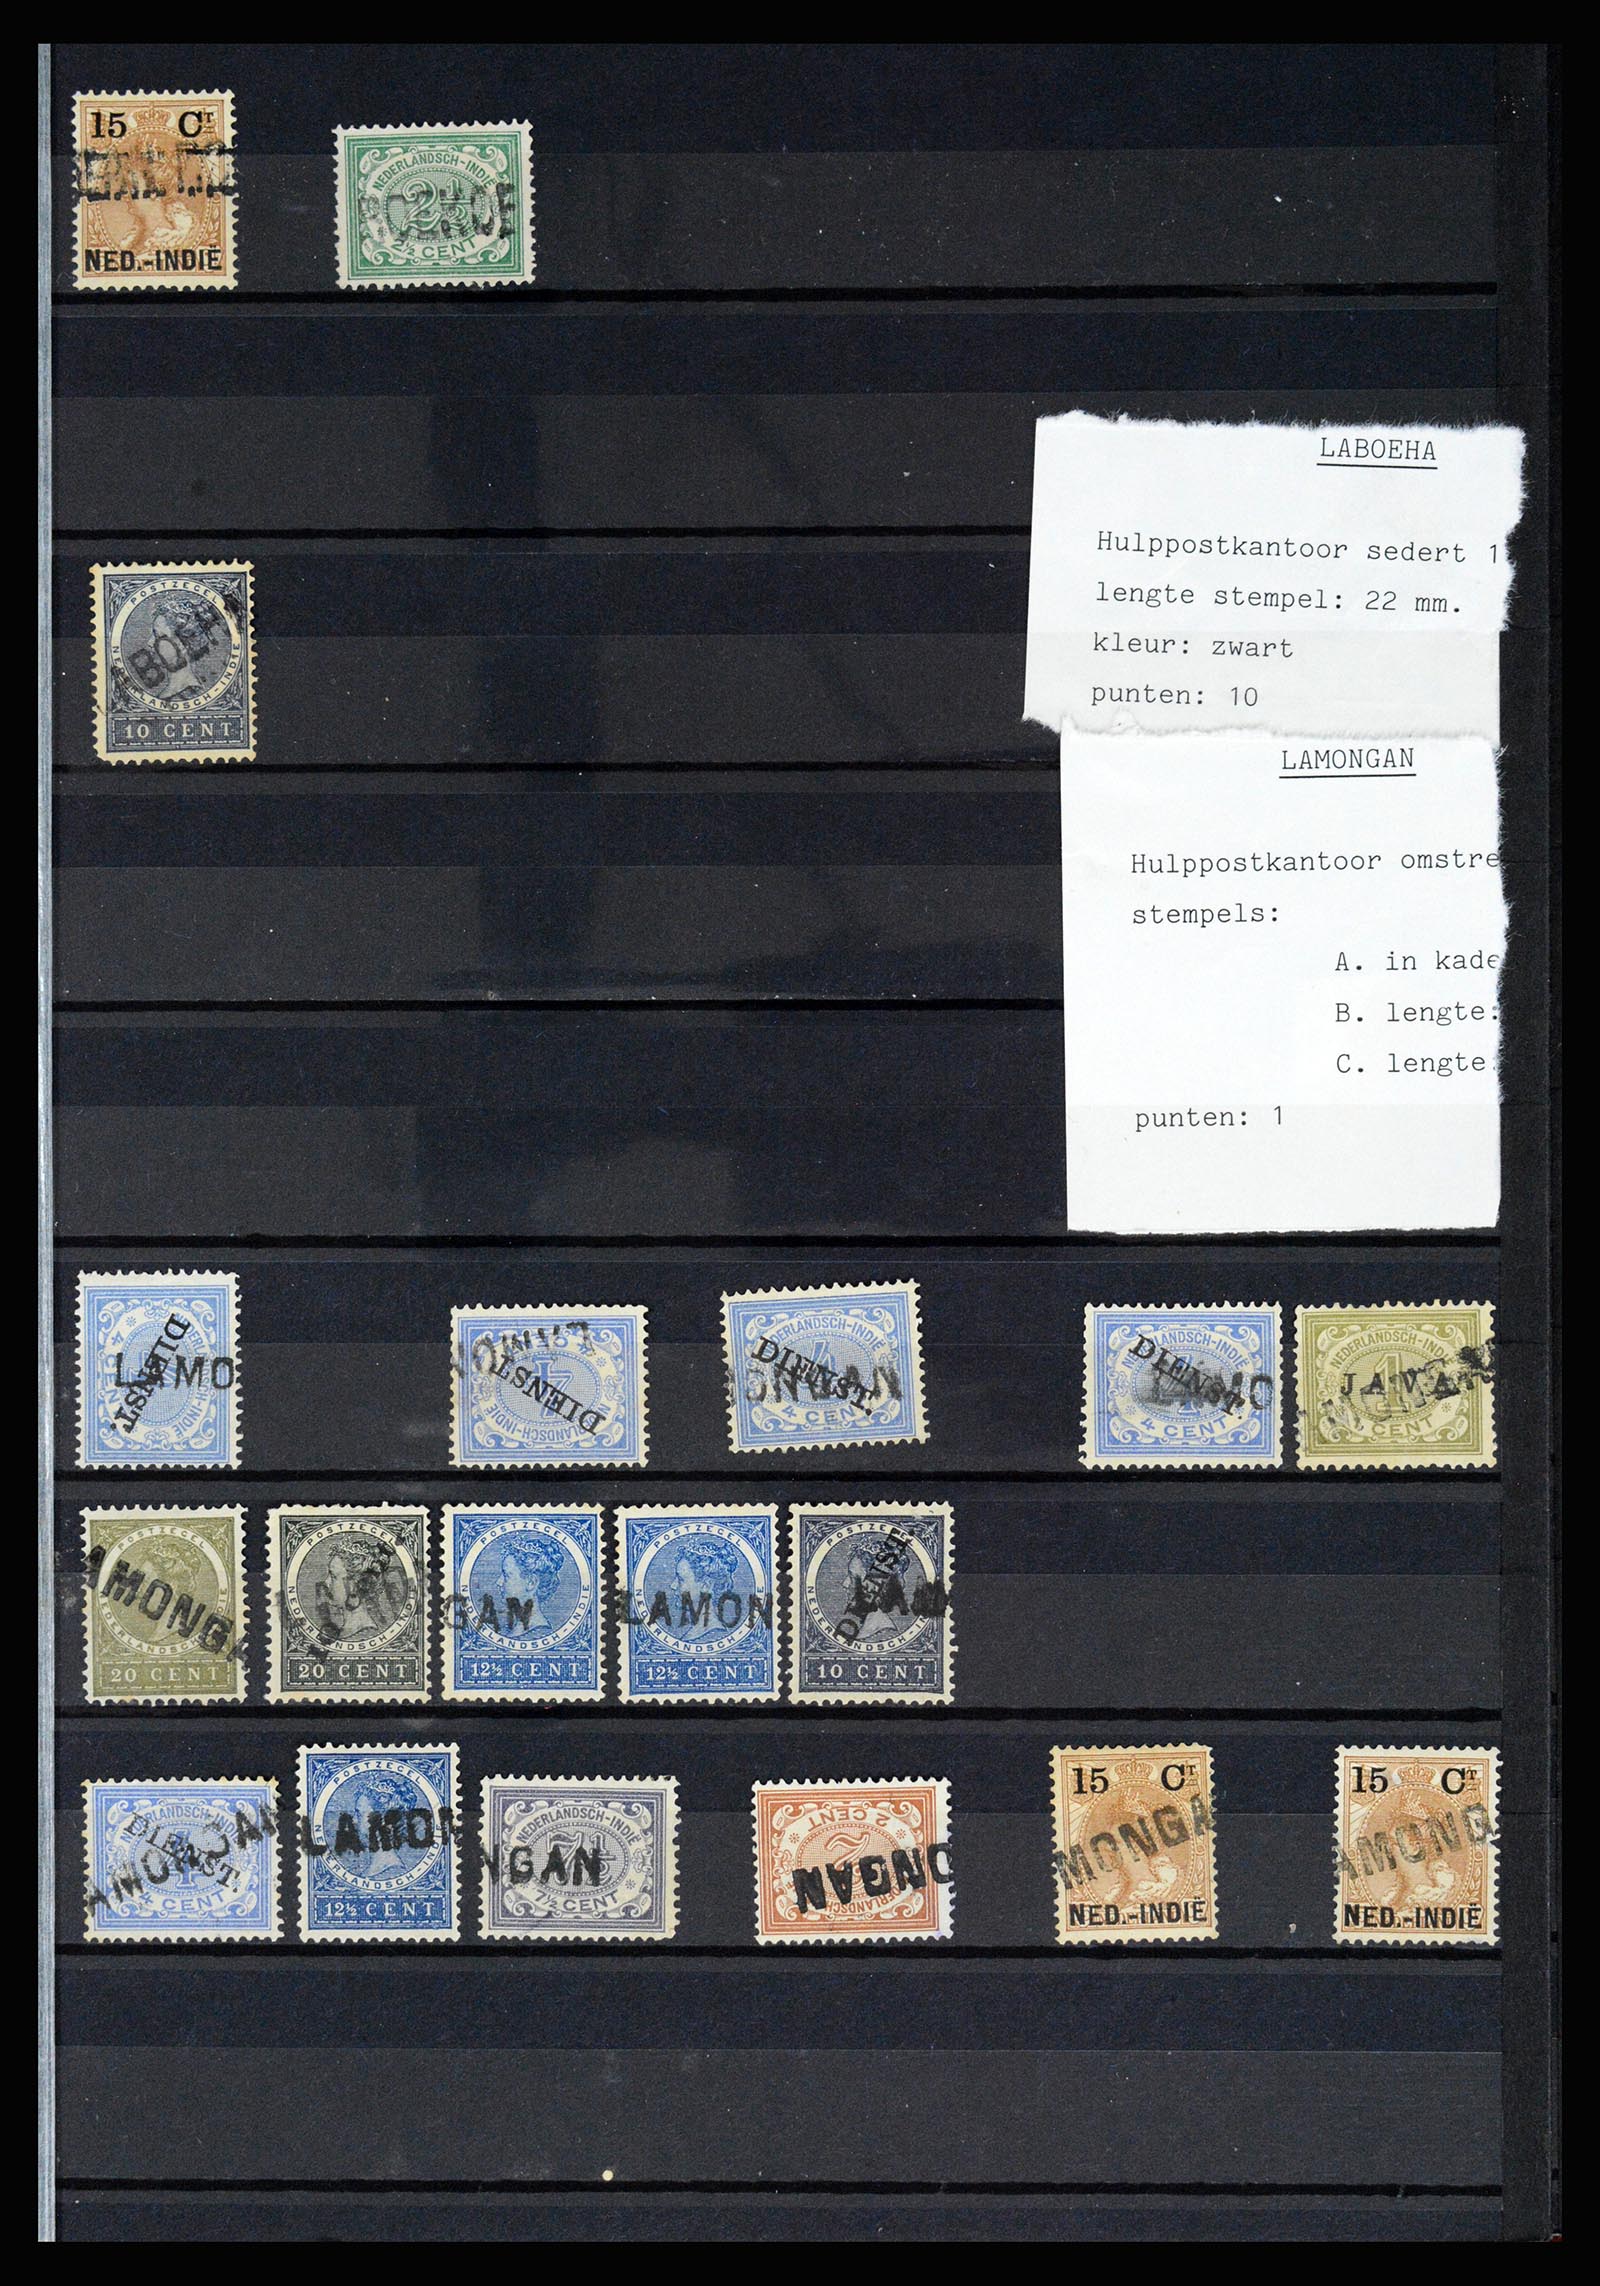 36512 039 - Stamp collection 36512 Nederlands Indië stempels 1872-1930.